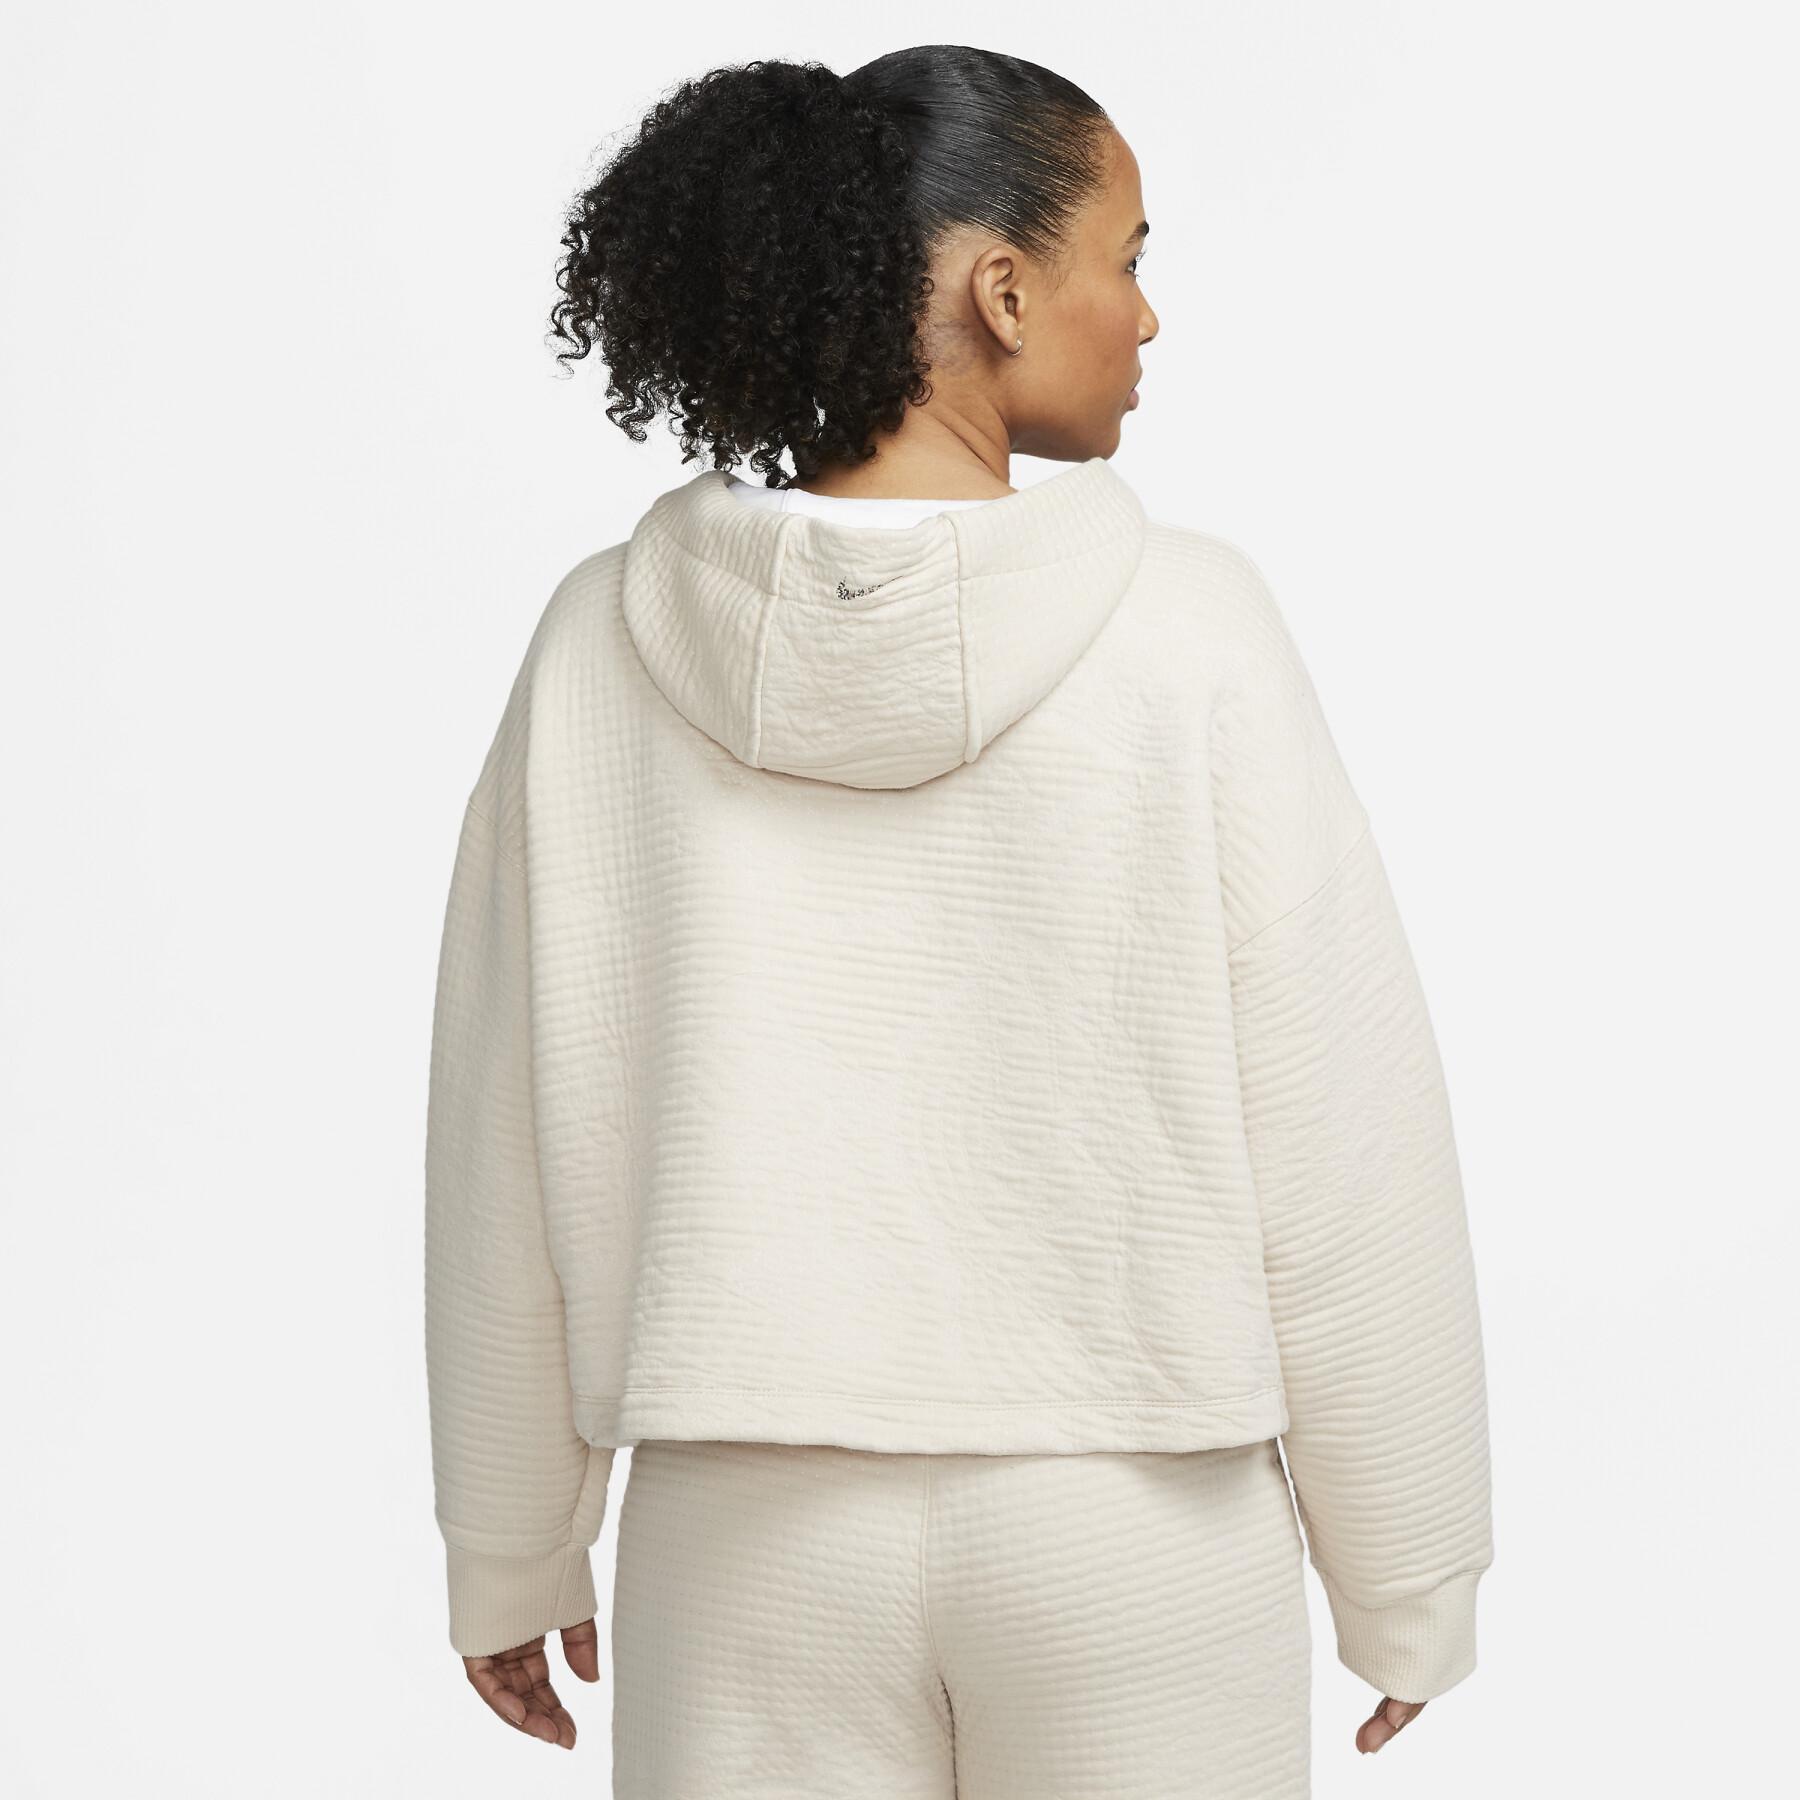 Sweatshirt donna Nike Luxe Fleece Baja